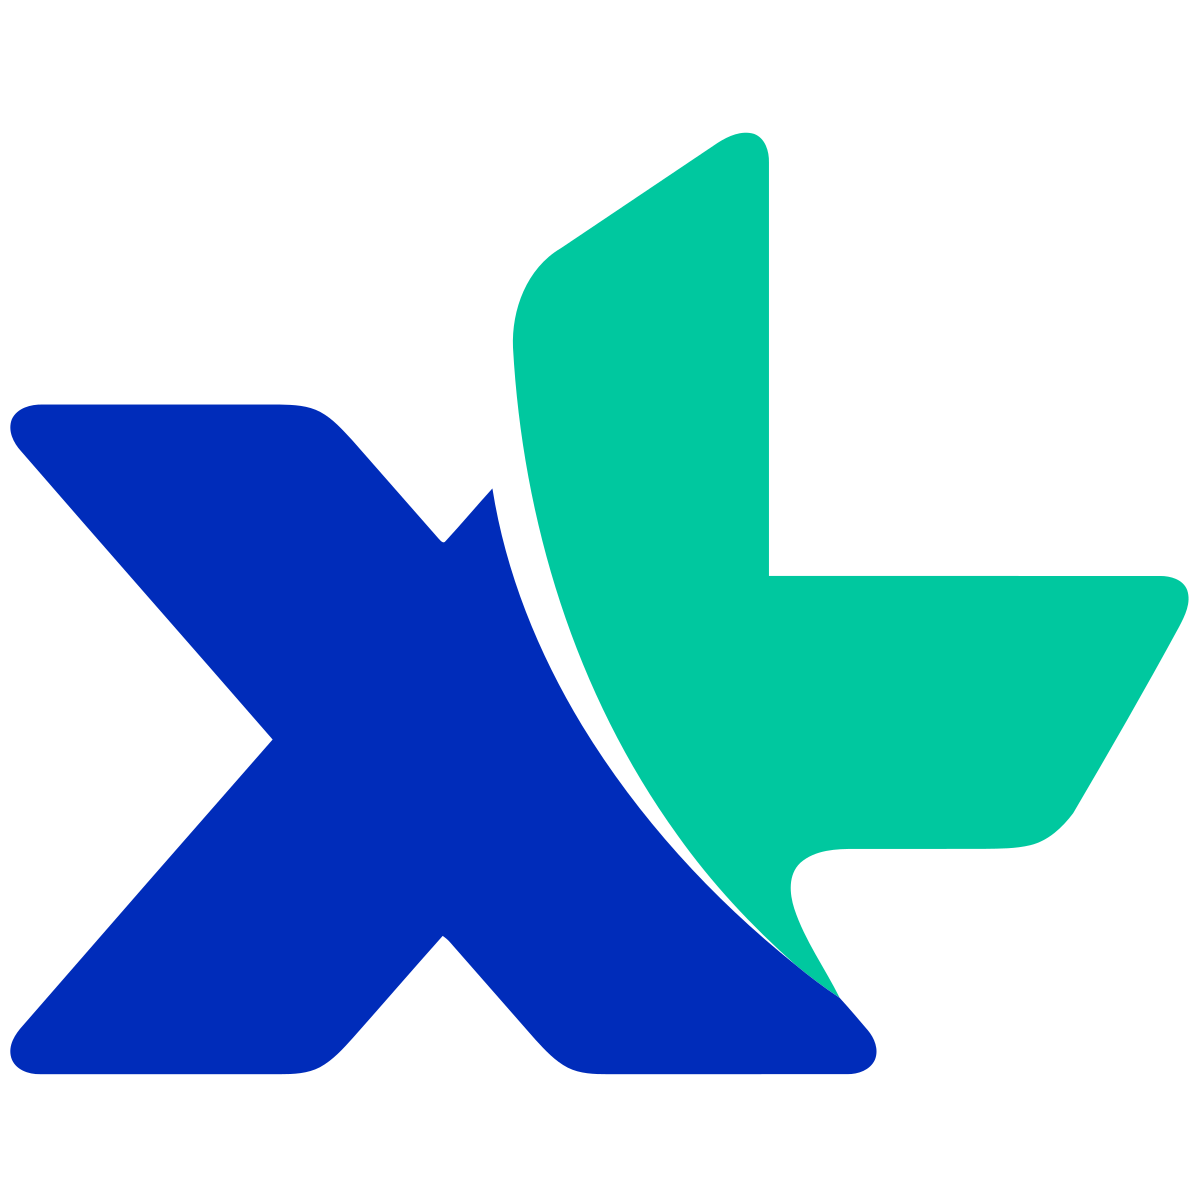 XL Axiata Logo photo - 1